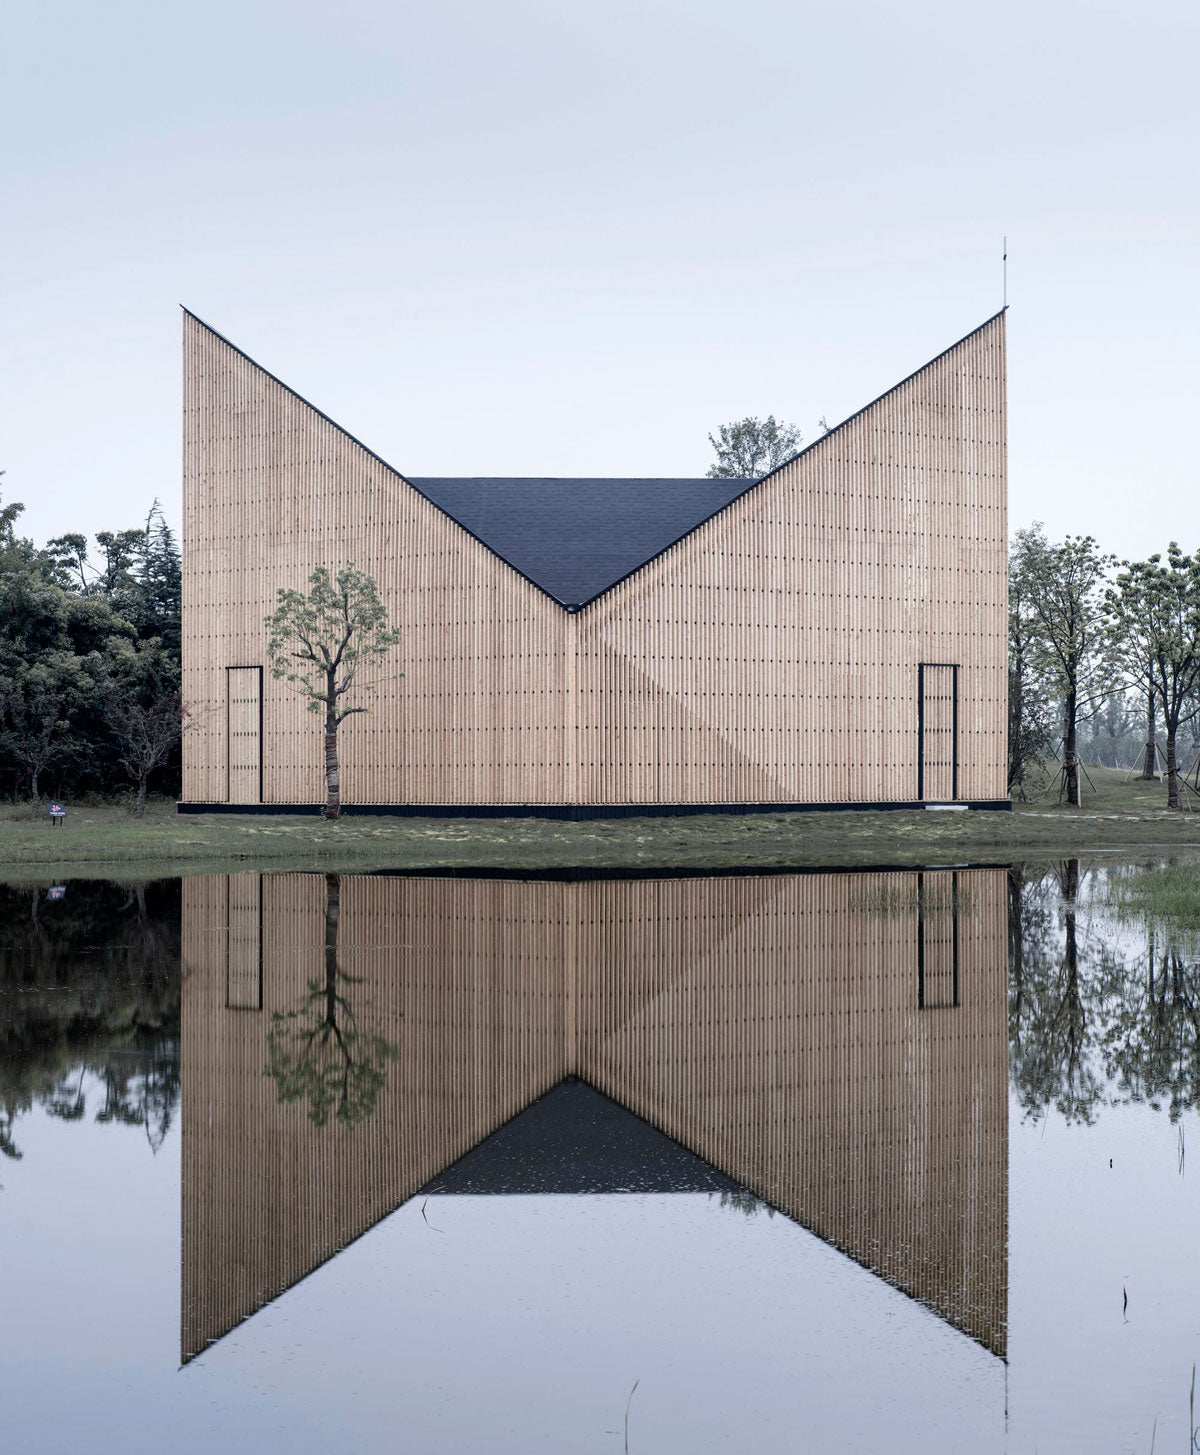 La capilla Nanjing Wanjing Garden tiene 200 metros cuadrados y se encuentra en Wanjing Garden, a lo largo de la orilla del río Nanjing en China. Elaborada con una estructura de madera y acero tiene una forma exterior suave, así como un espacio interior fuerte y de textura lisa, por AZL Architects.  Foto: Yao Li